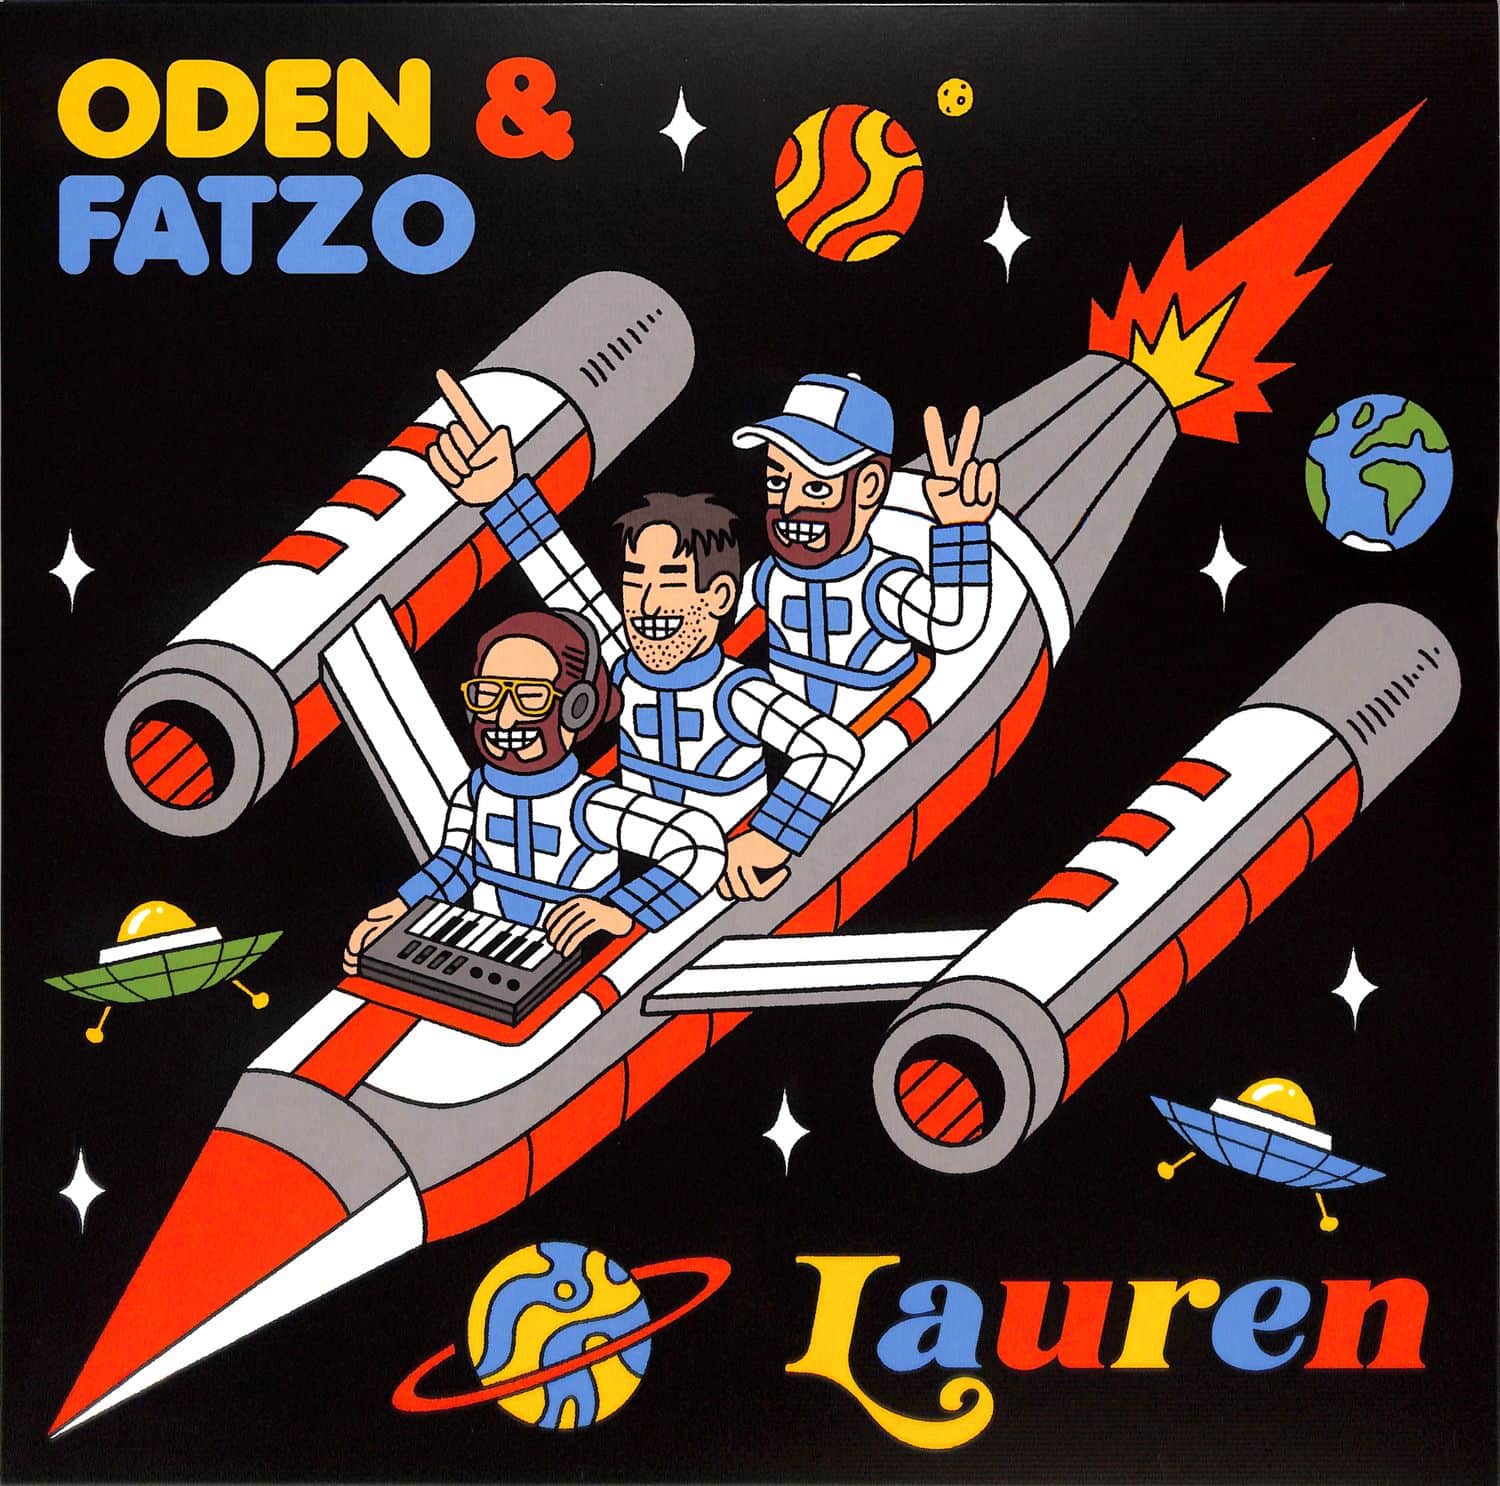 Oden & Fatzo - LAUREN